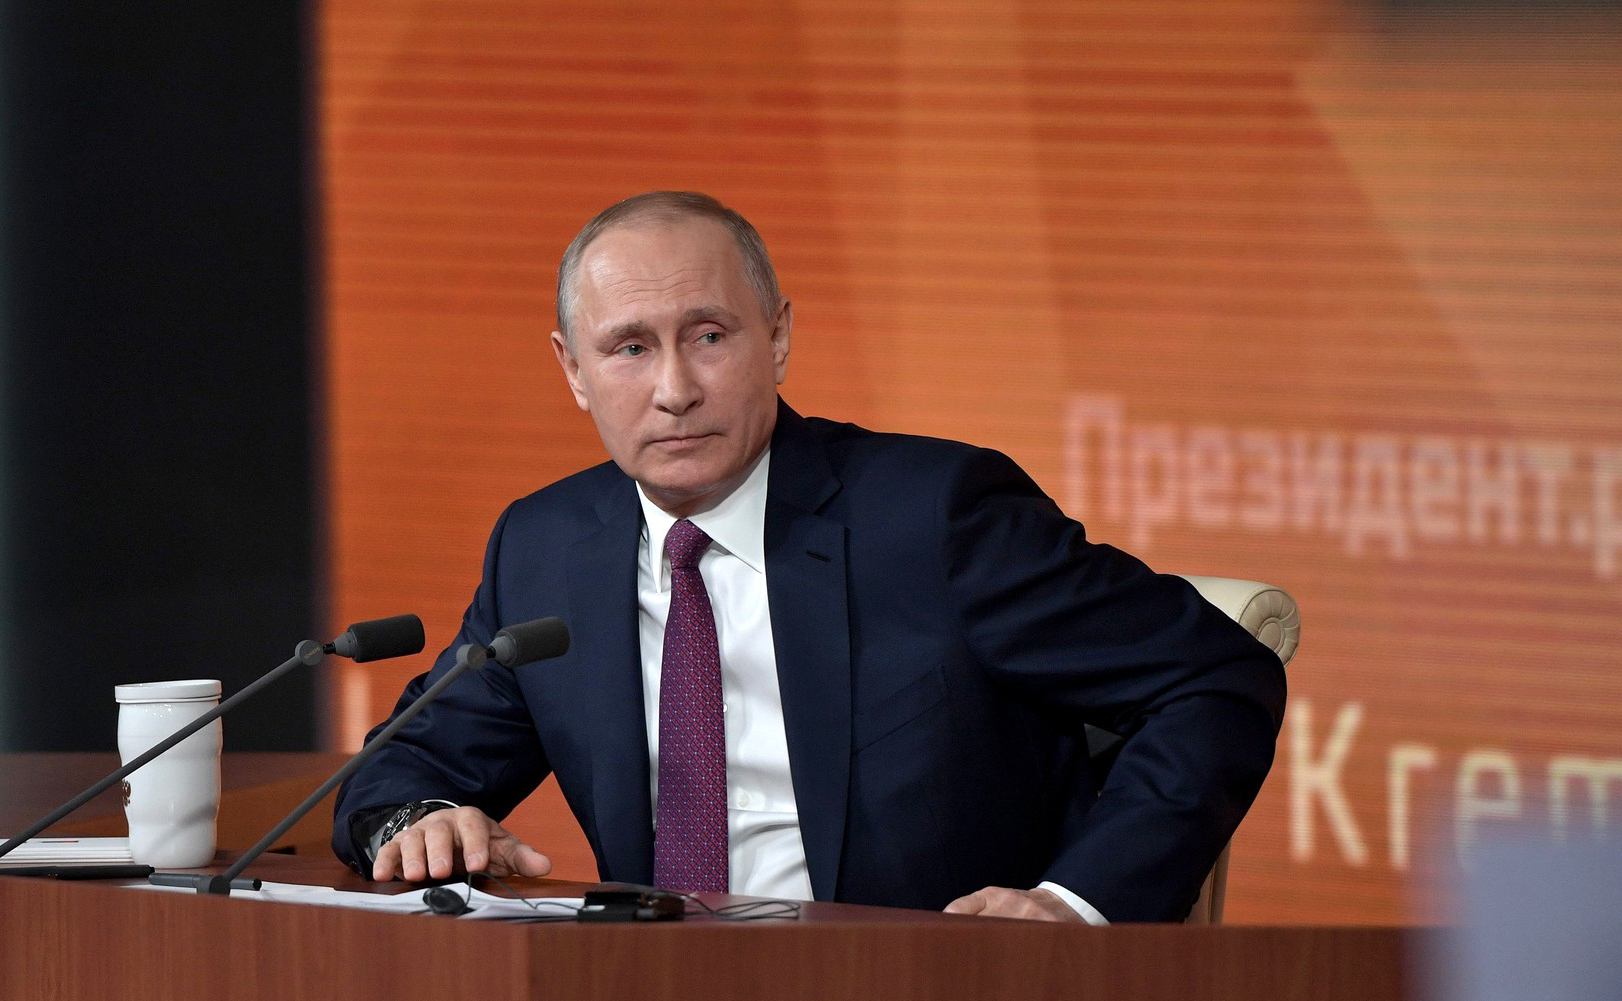 Владимир Путин: Вопросы межнациональных отношений в нашей стране относятся к разряду наиболее важных.